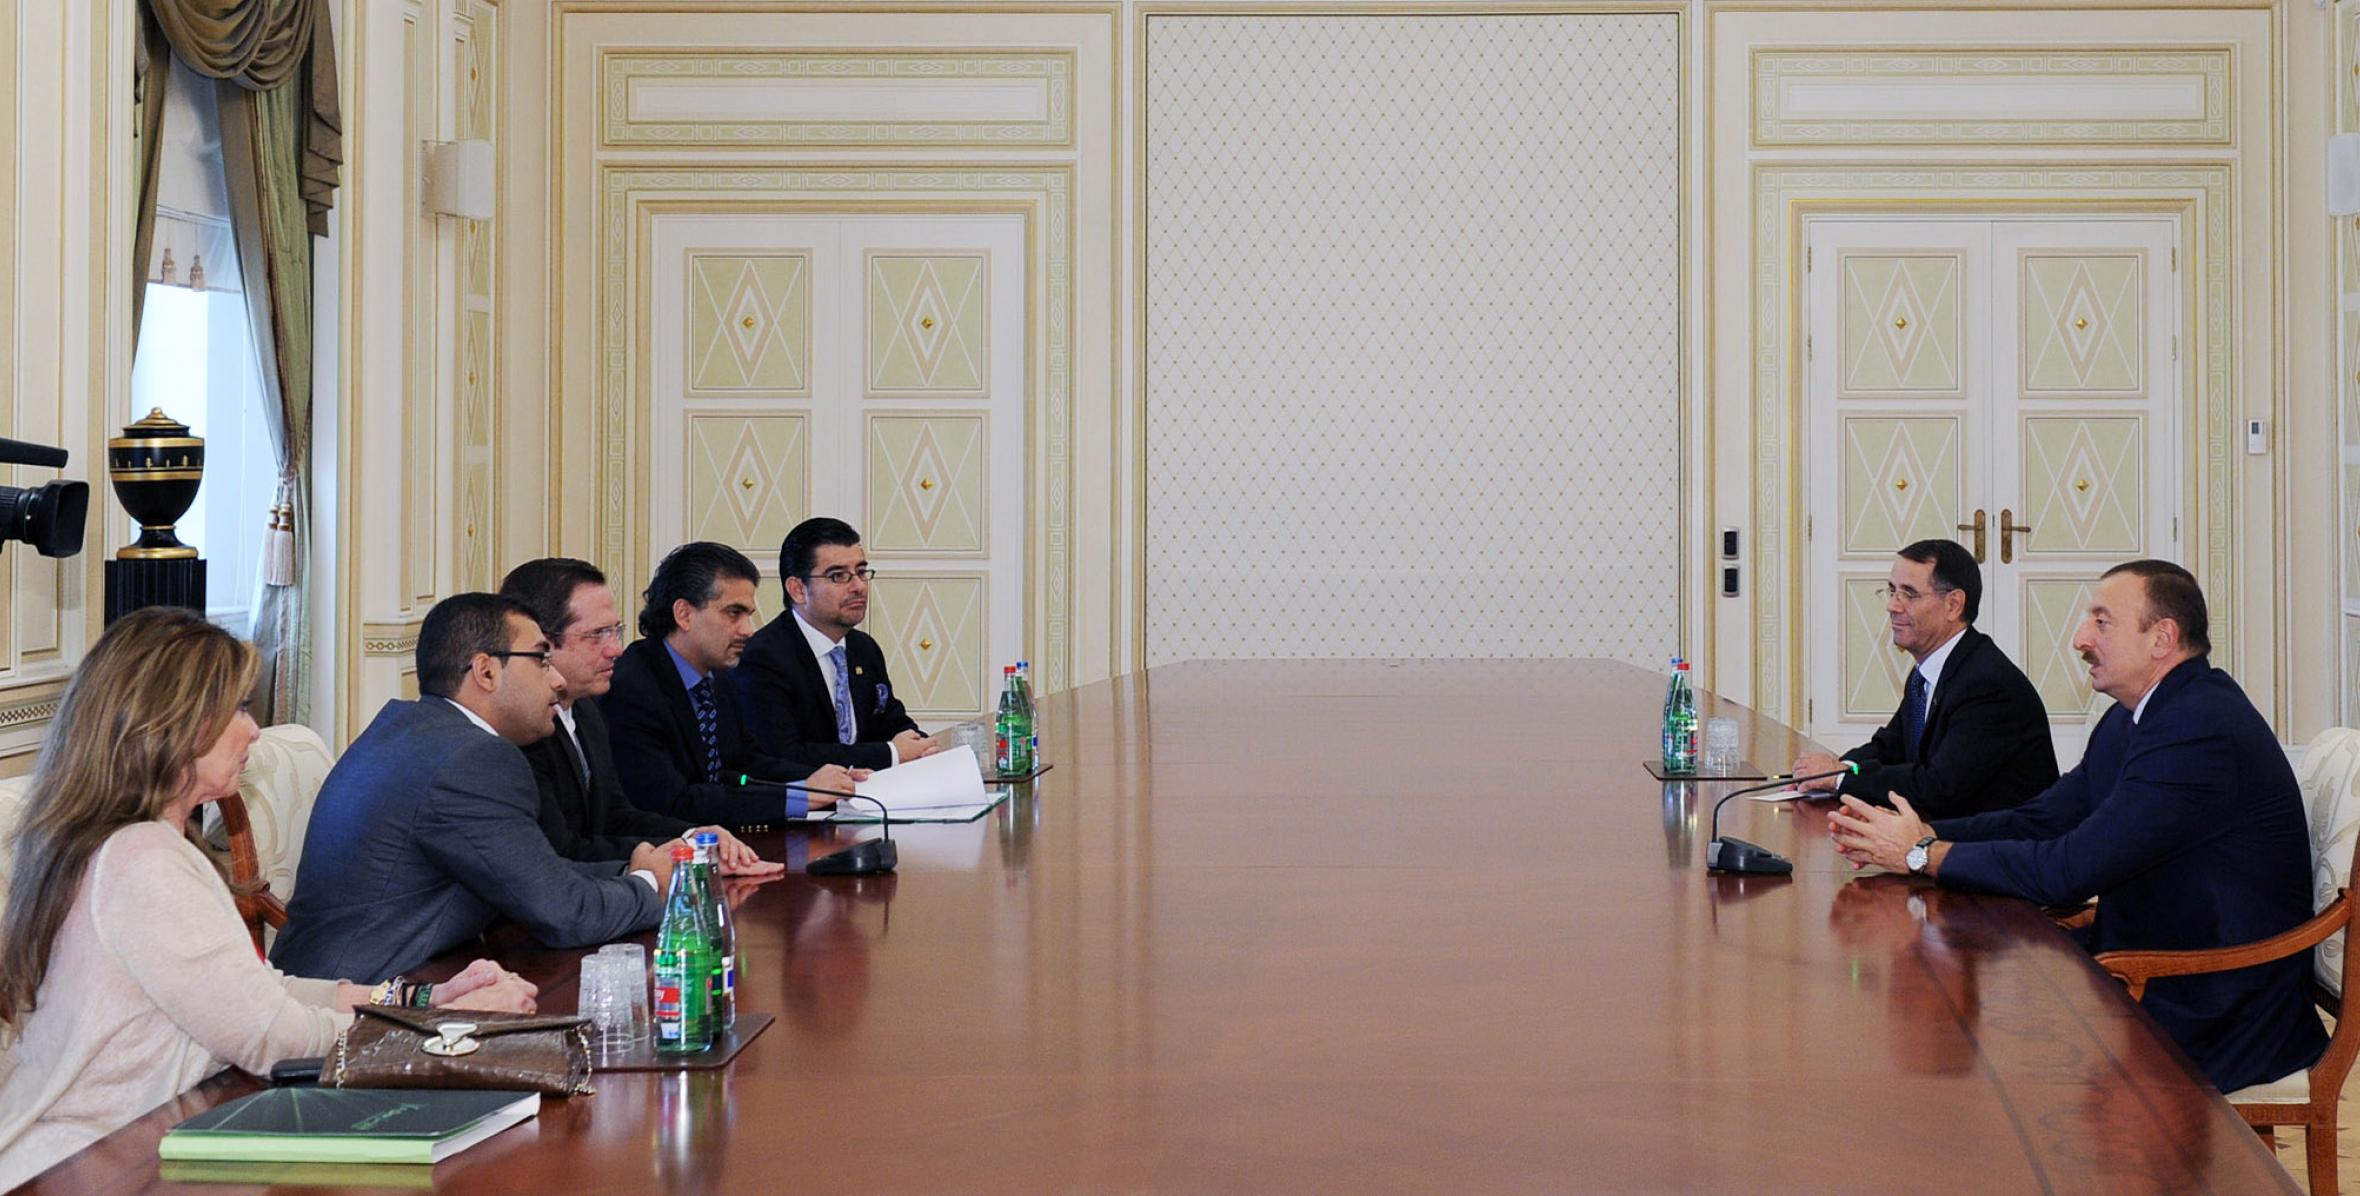 Ilham Aliyev received the Minister of Foreign Affairs, Trade and Integration of Ecuador, Ricardo Armando Patiño Aroca